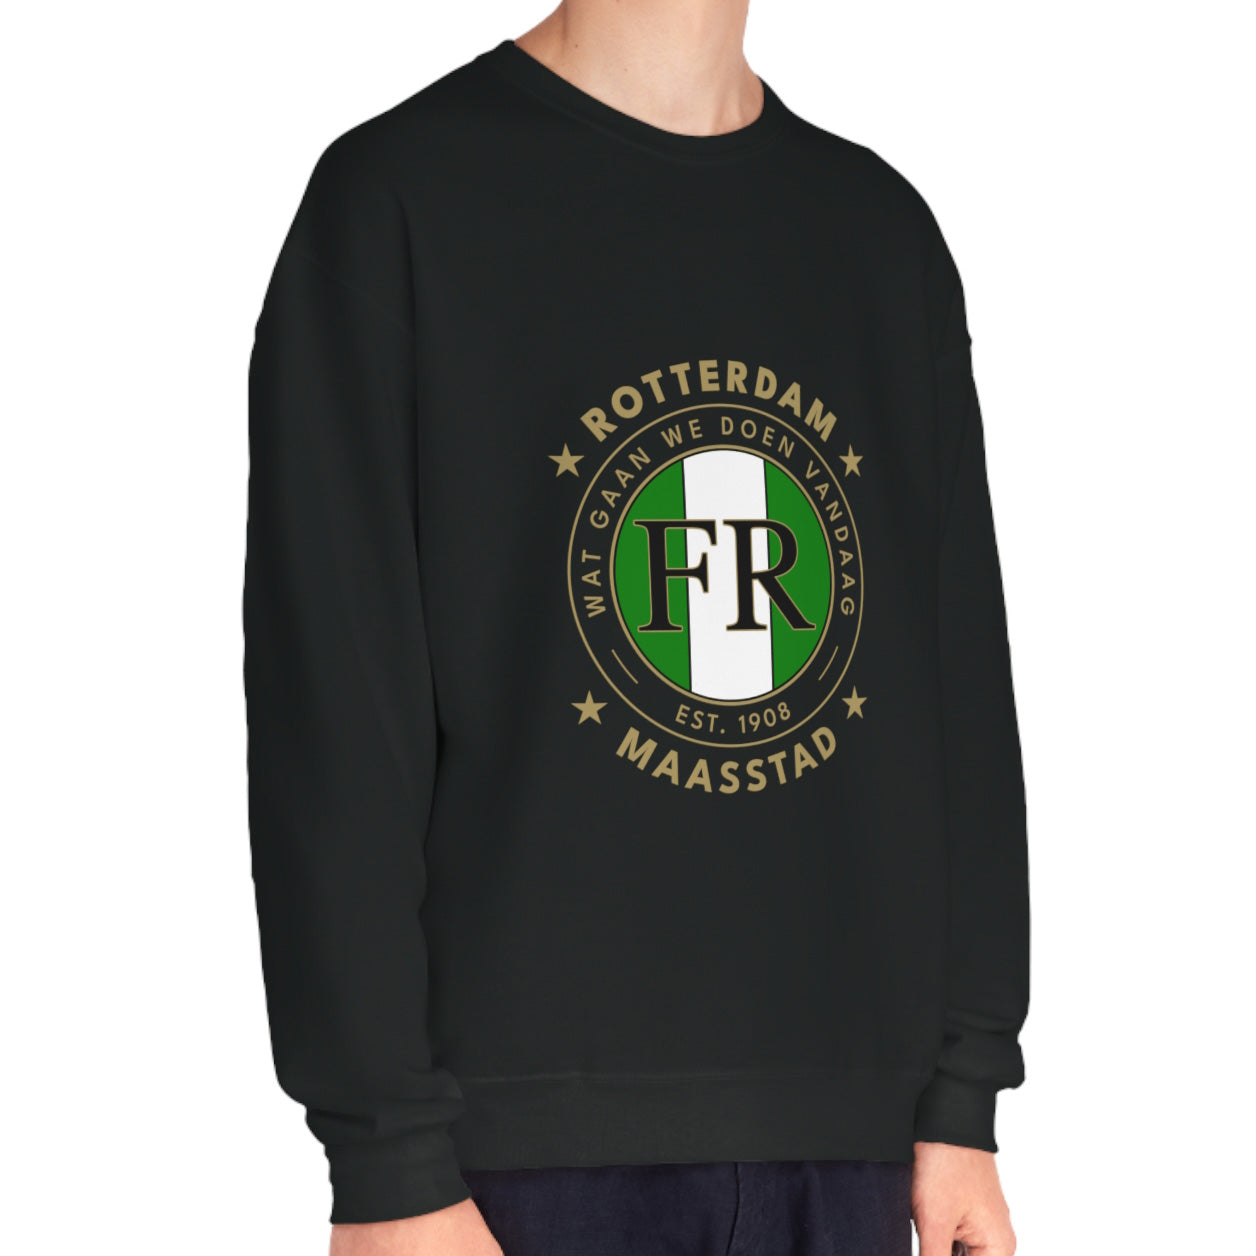 Sweater loose regular zwart - FR- Wat gaan we doen vandaag - logo voor groot